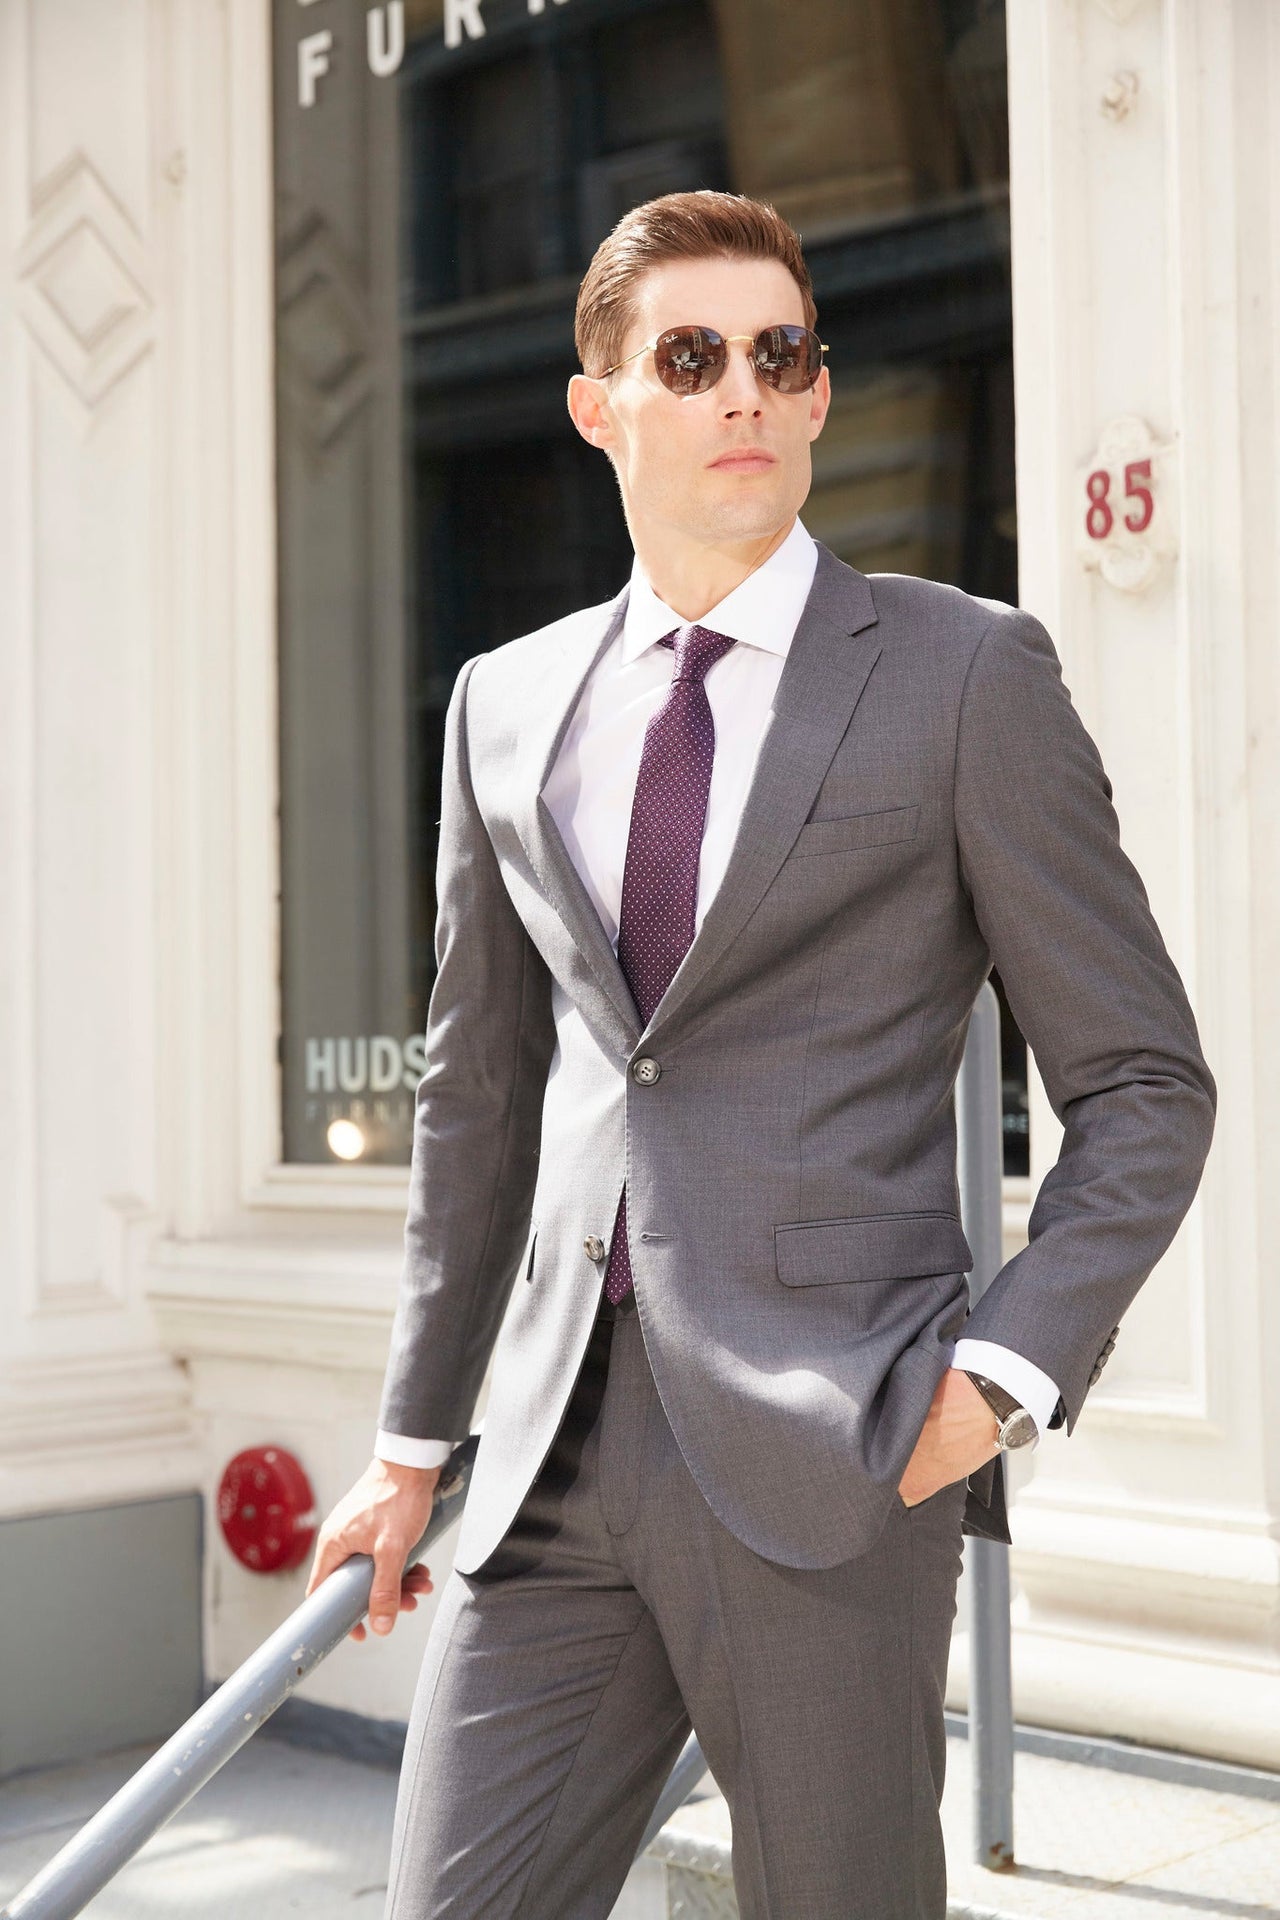 Luxurious Medium Grey Suit For Men - Tomasso Black